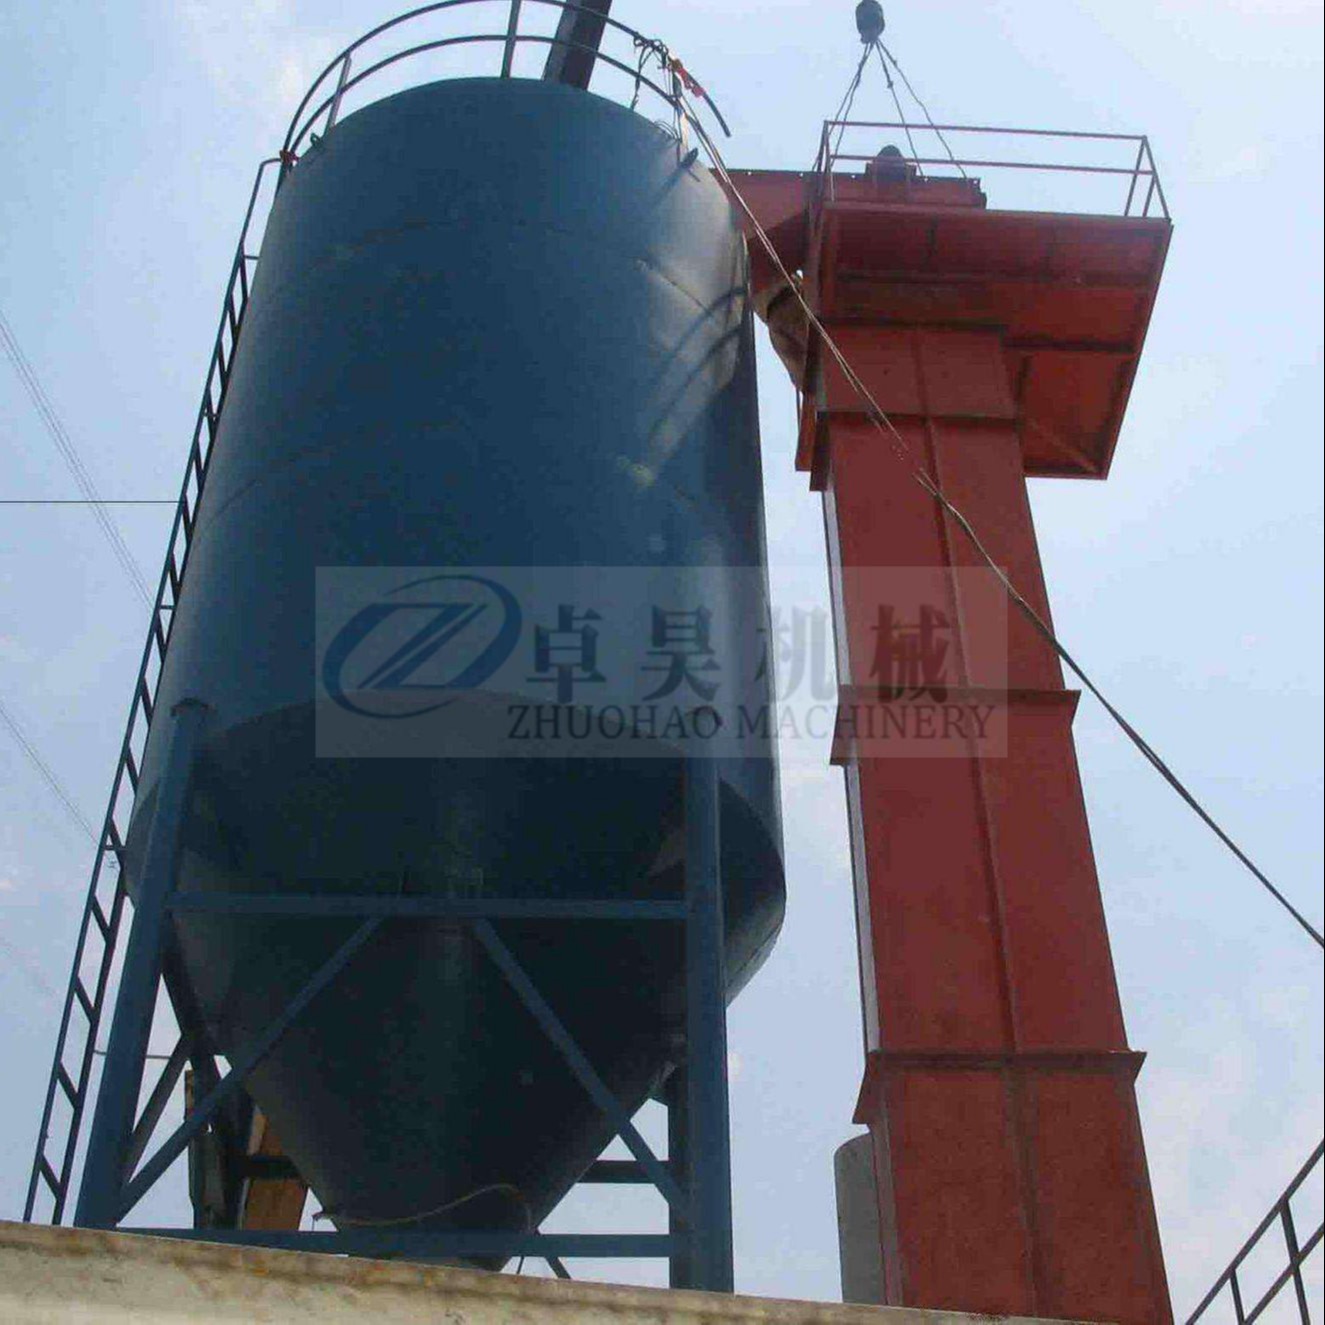 郑州100吨水泥罐生产厂家 100吨水泥仓设备 120t水泥罐价格 立式散装水泥罐设备